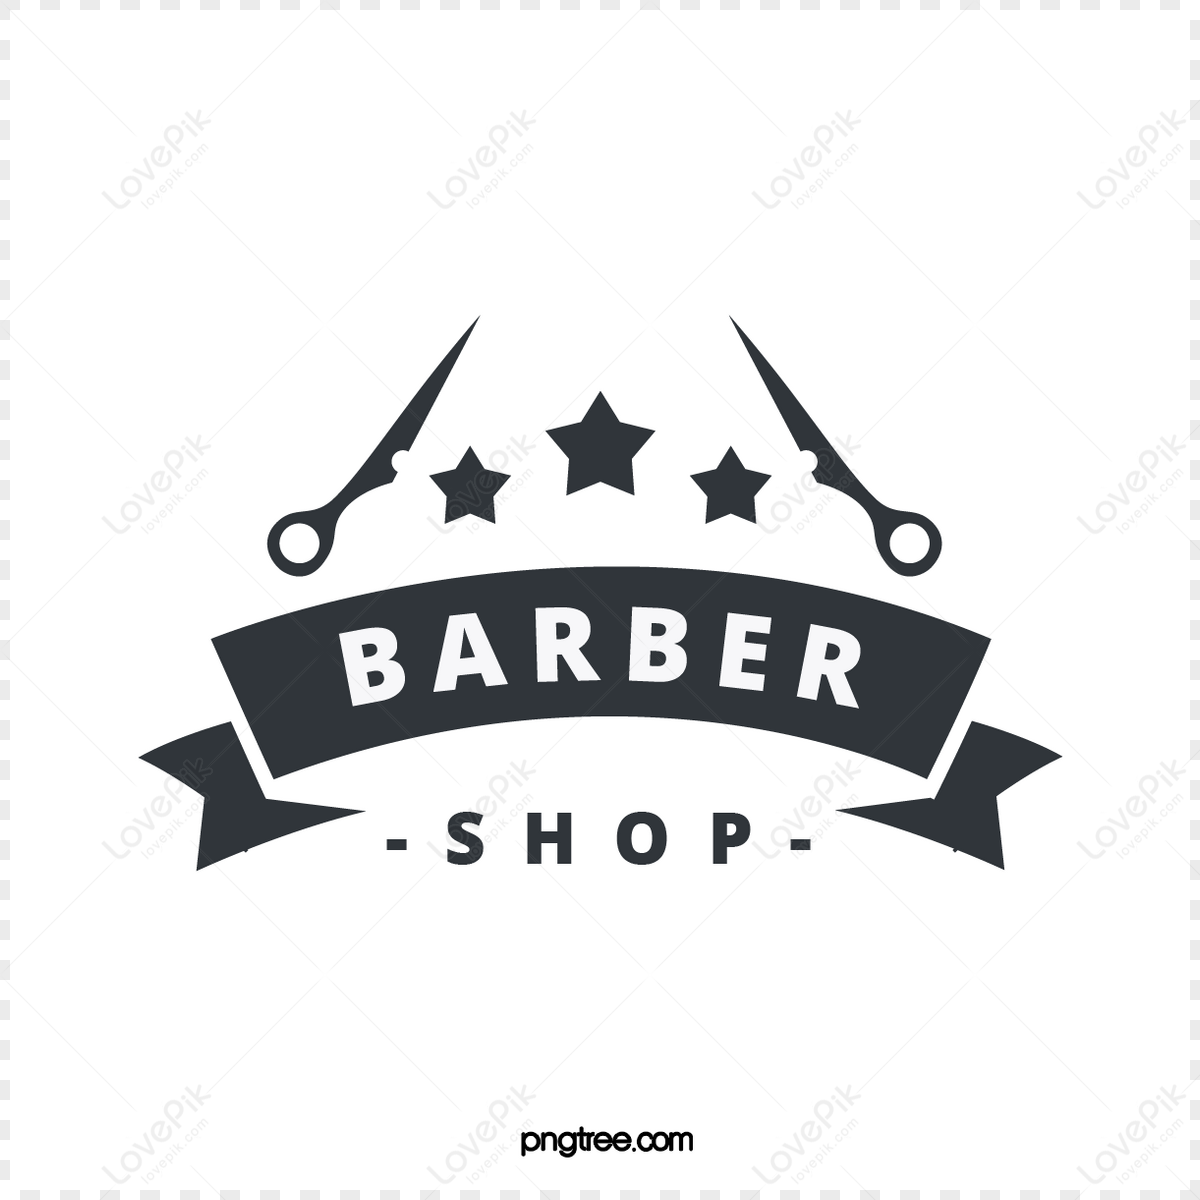 Vintage barber shop logo for your design Vector Image